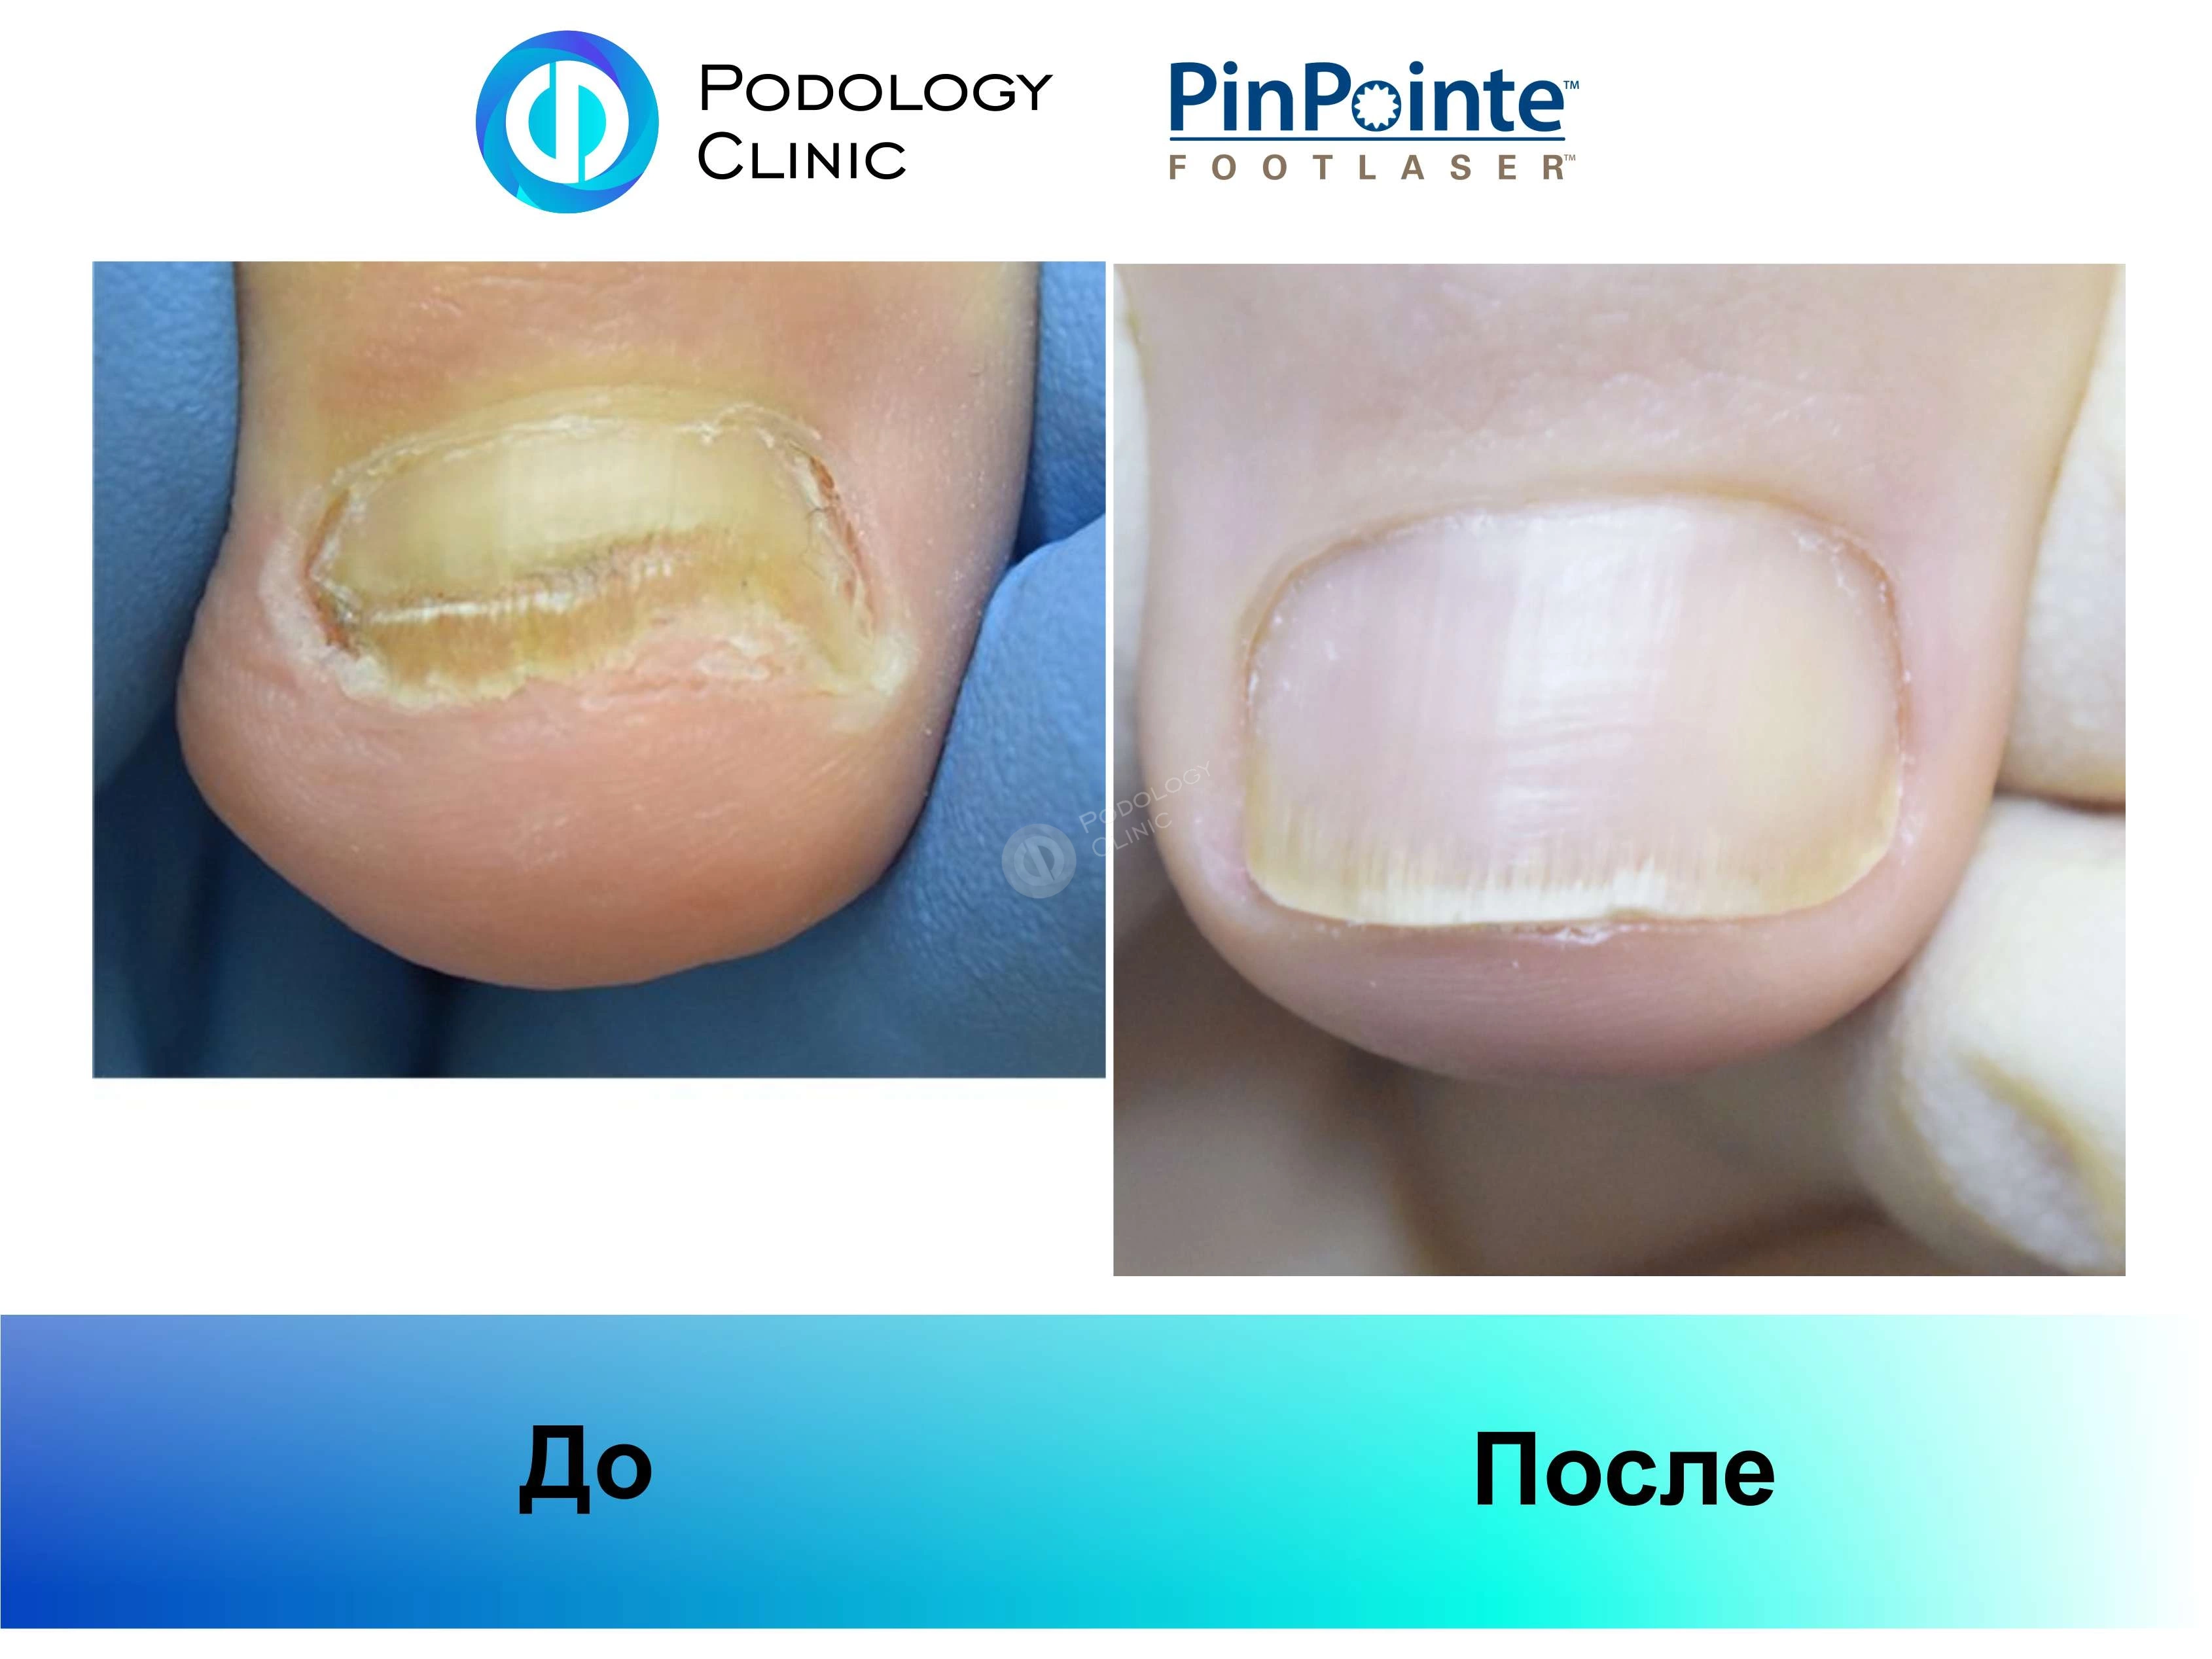 Примеры работы лазера PinPointe FootLaser в лечении онихомикоза, фото 8